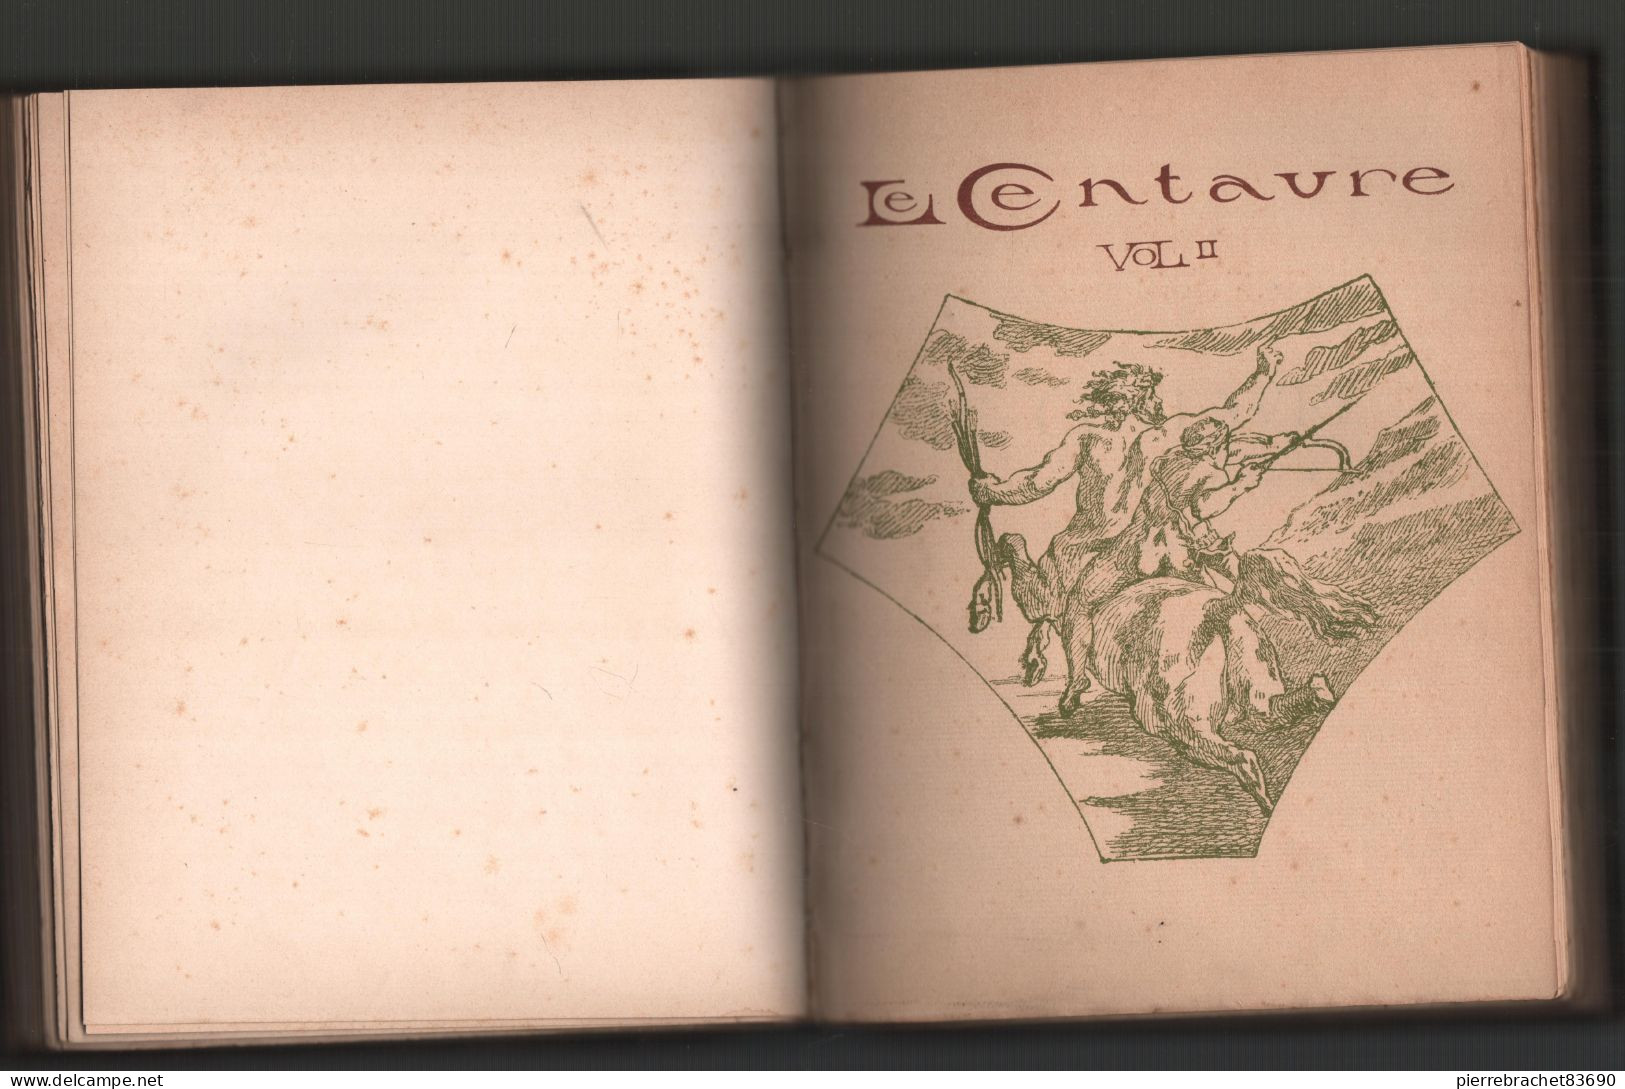 Collectif. Revue Le centaure. 2 volumes reliés en un seul.